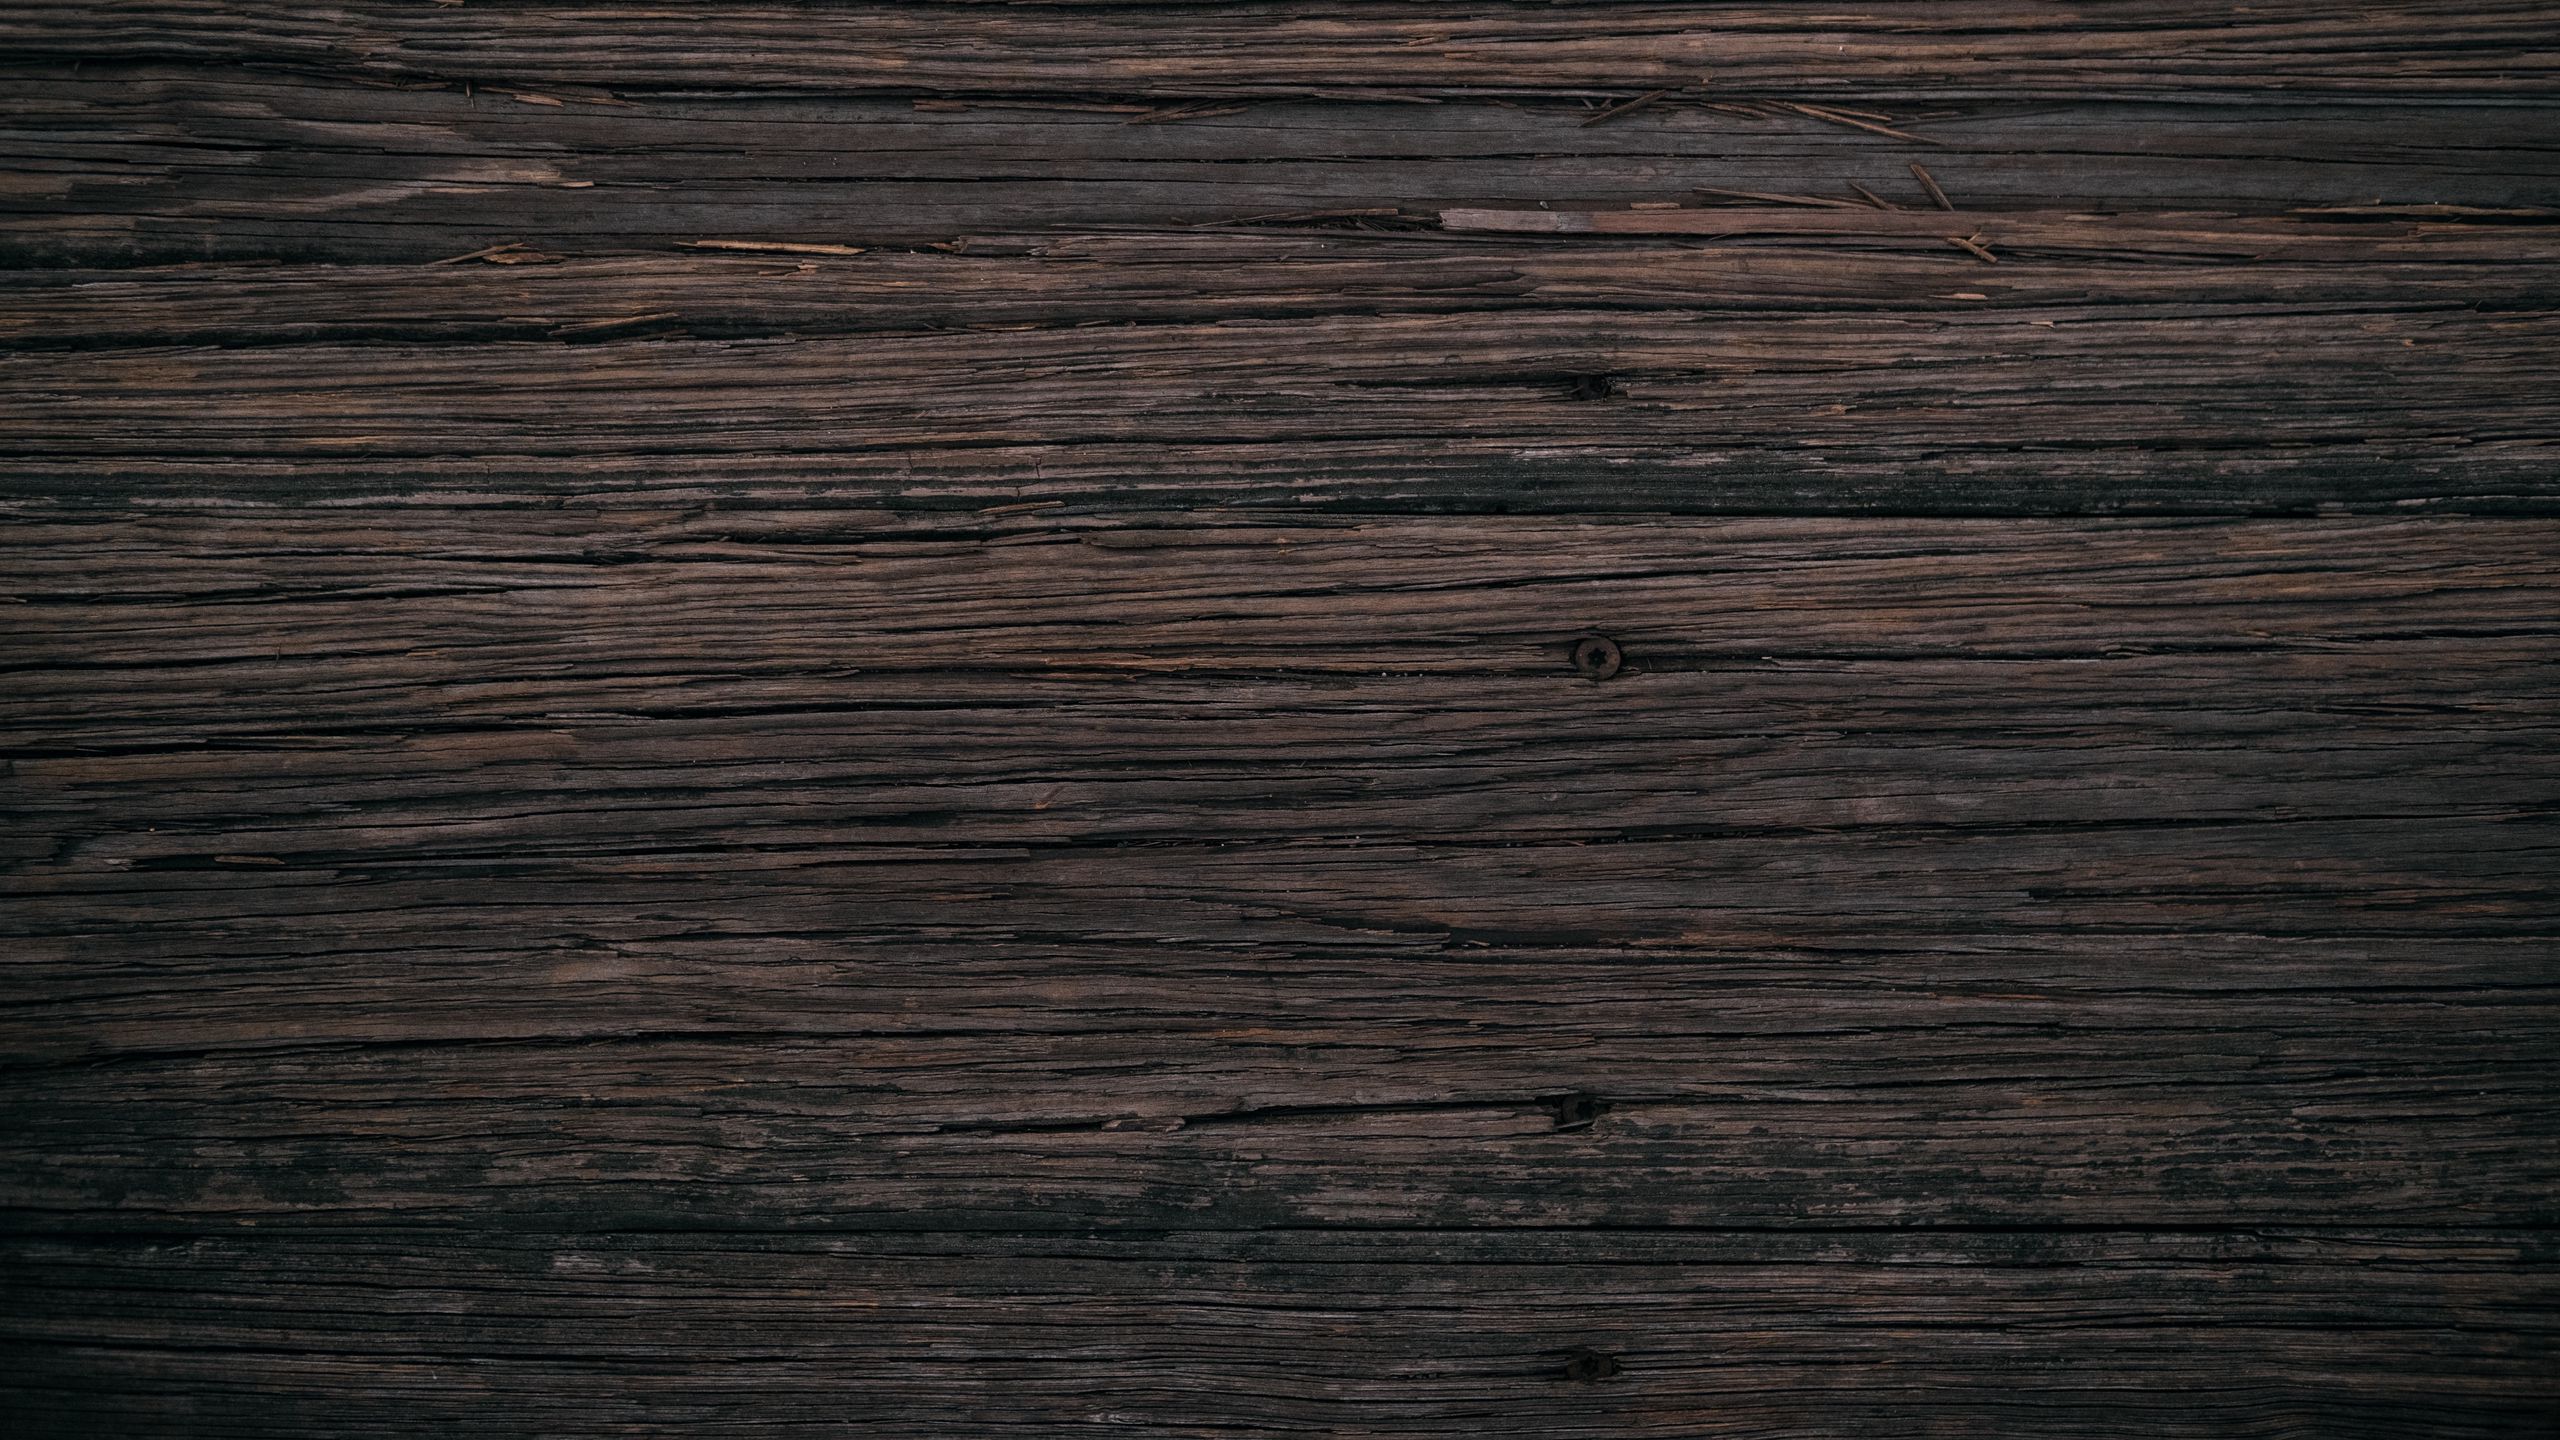 Hình nền gỗ nâu với họa tiết ván ép sẽ mang đến cho bạn một ấn tượng hoàn toàn mới. Với cấu trúc vân gỗ độc đáo, bạn sẽ và cảm giác như đang bước vào một không gian nội thất sang trọng, đẳng cấp. Hãy cài đặt ngay để tận hưởng trải nghiệm tuyệt vời này.